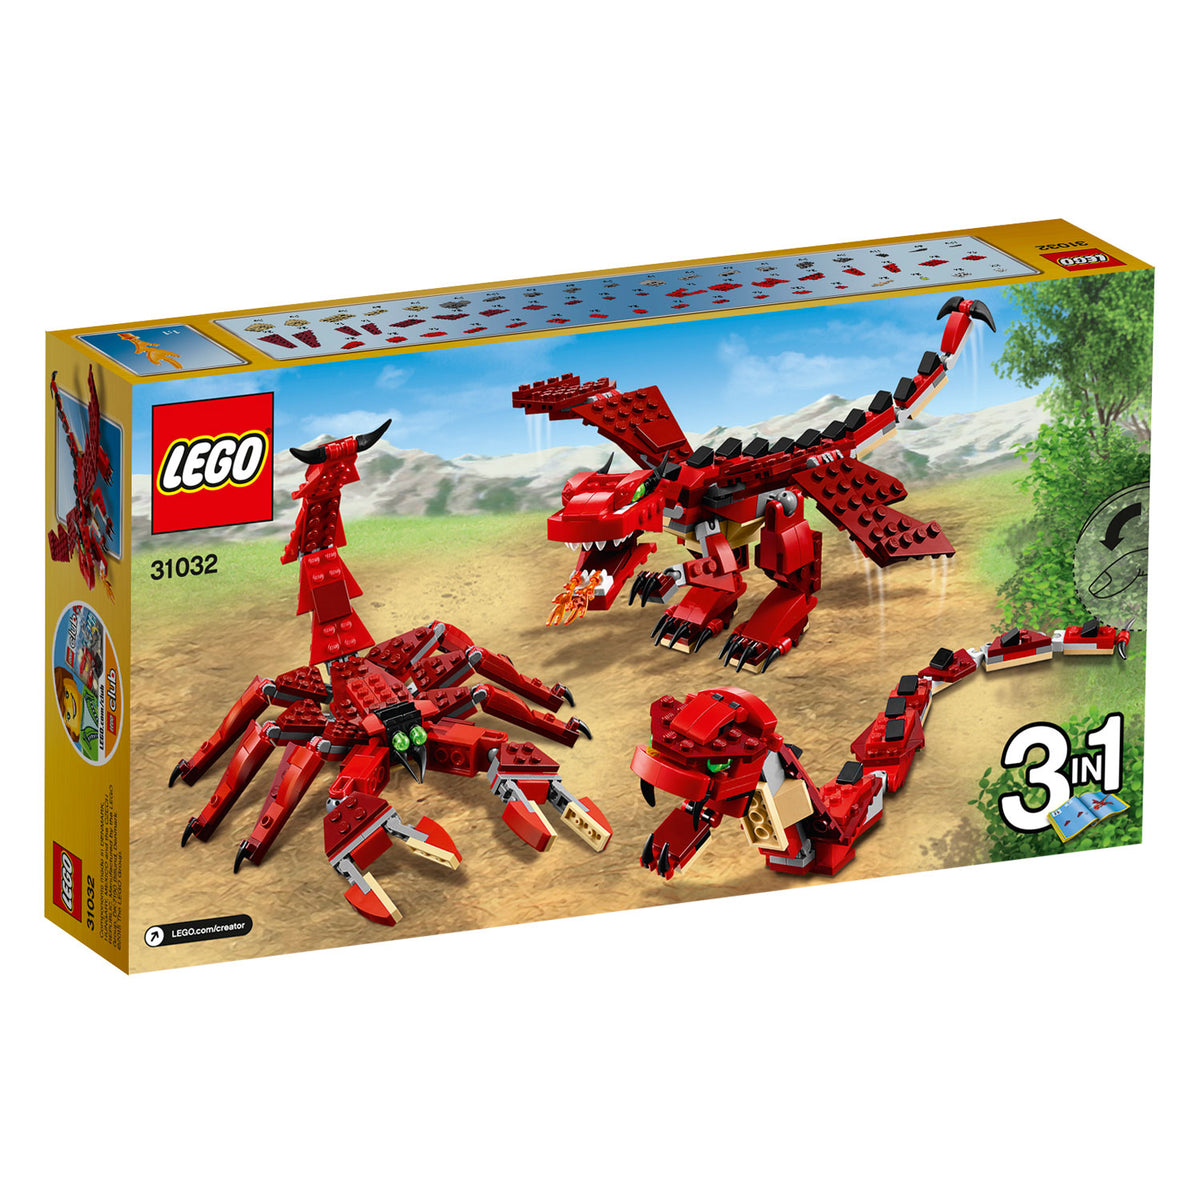 LEGO Creator 31032 Rote Kreaturen